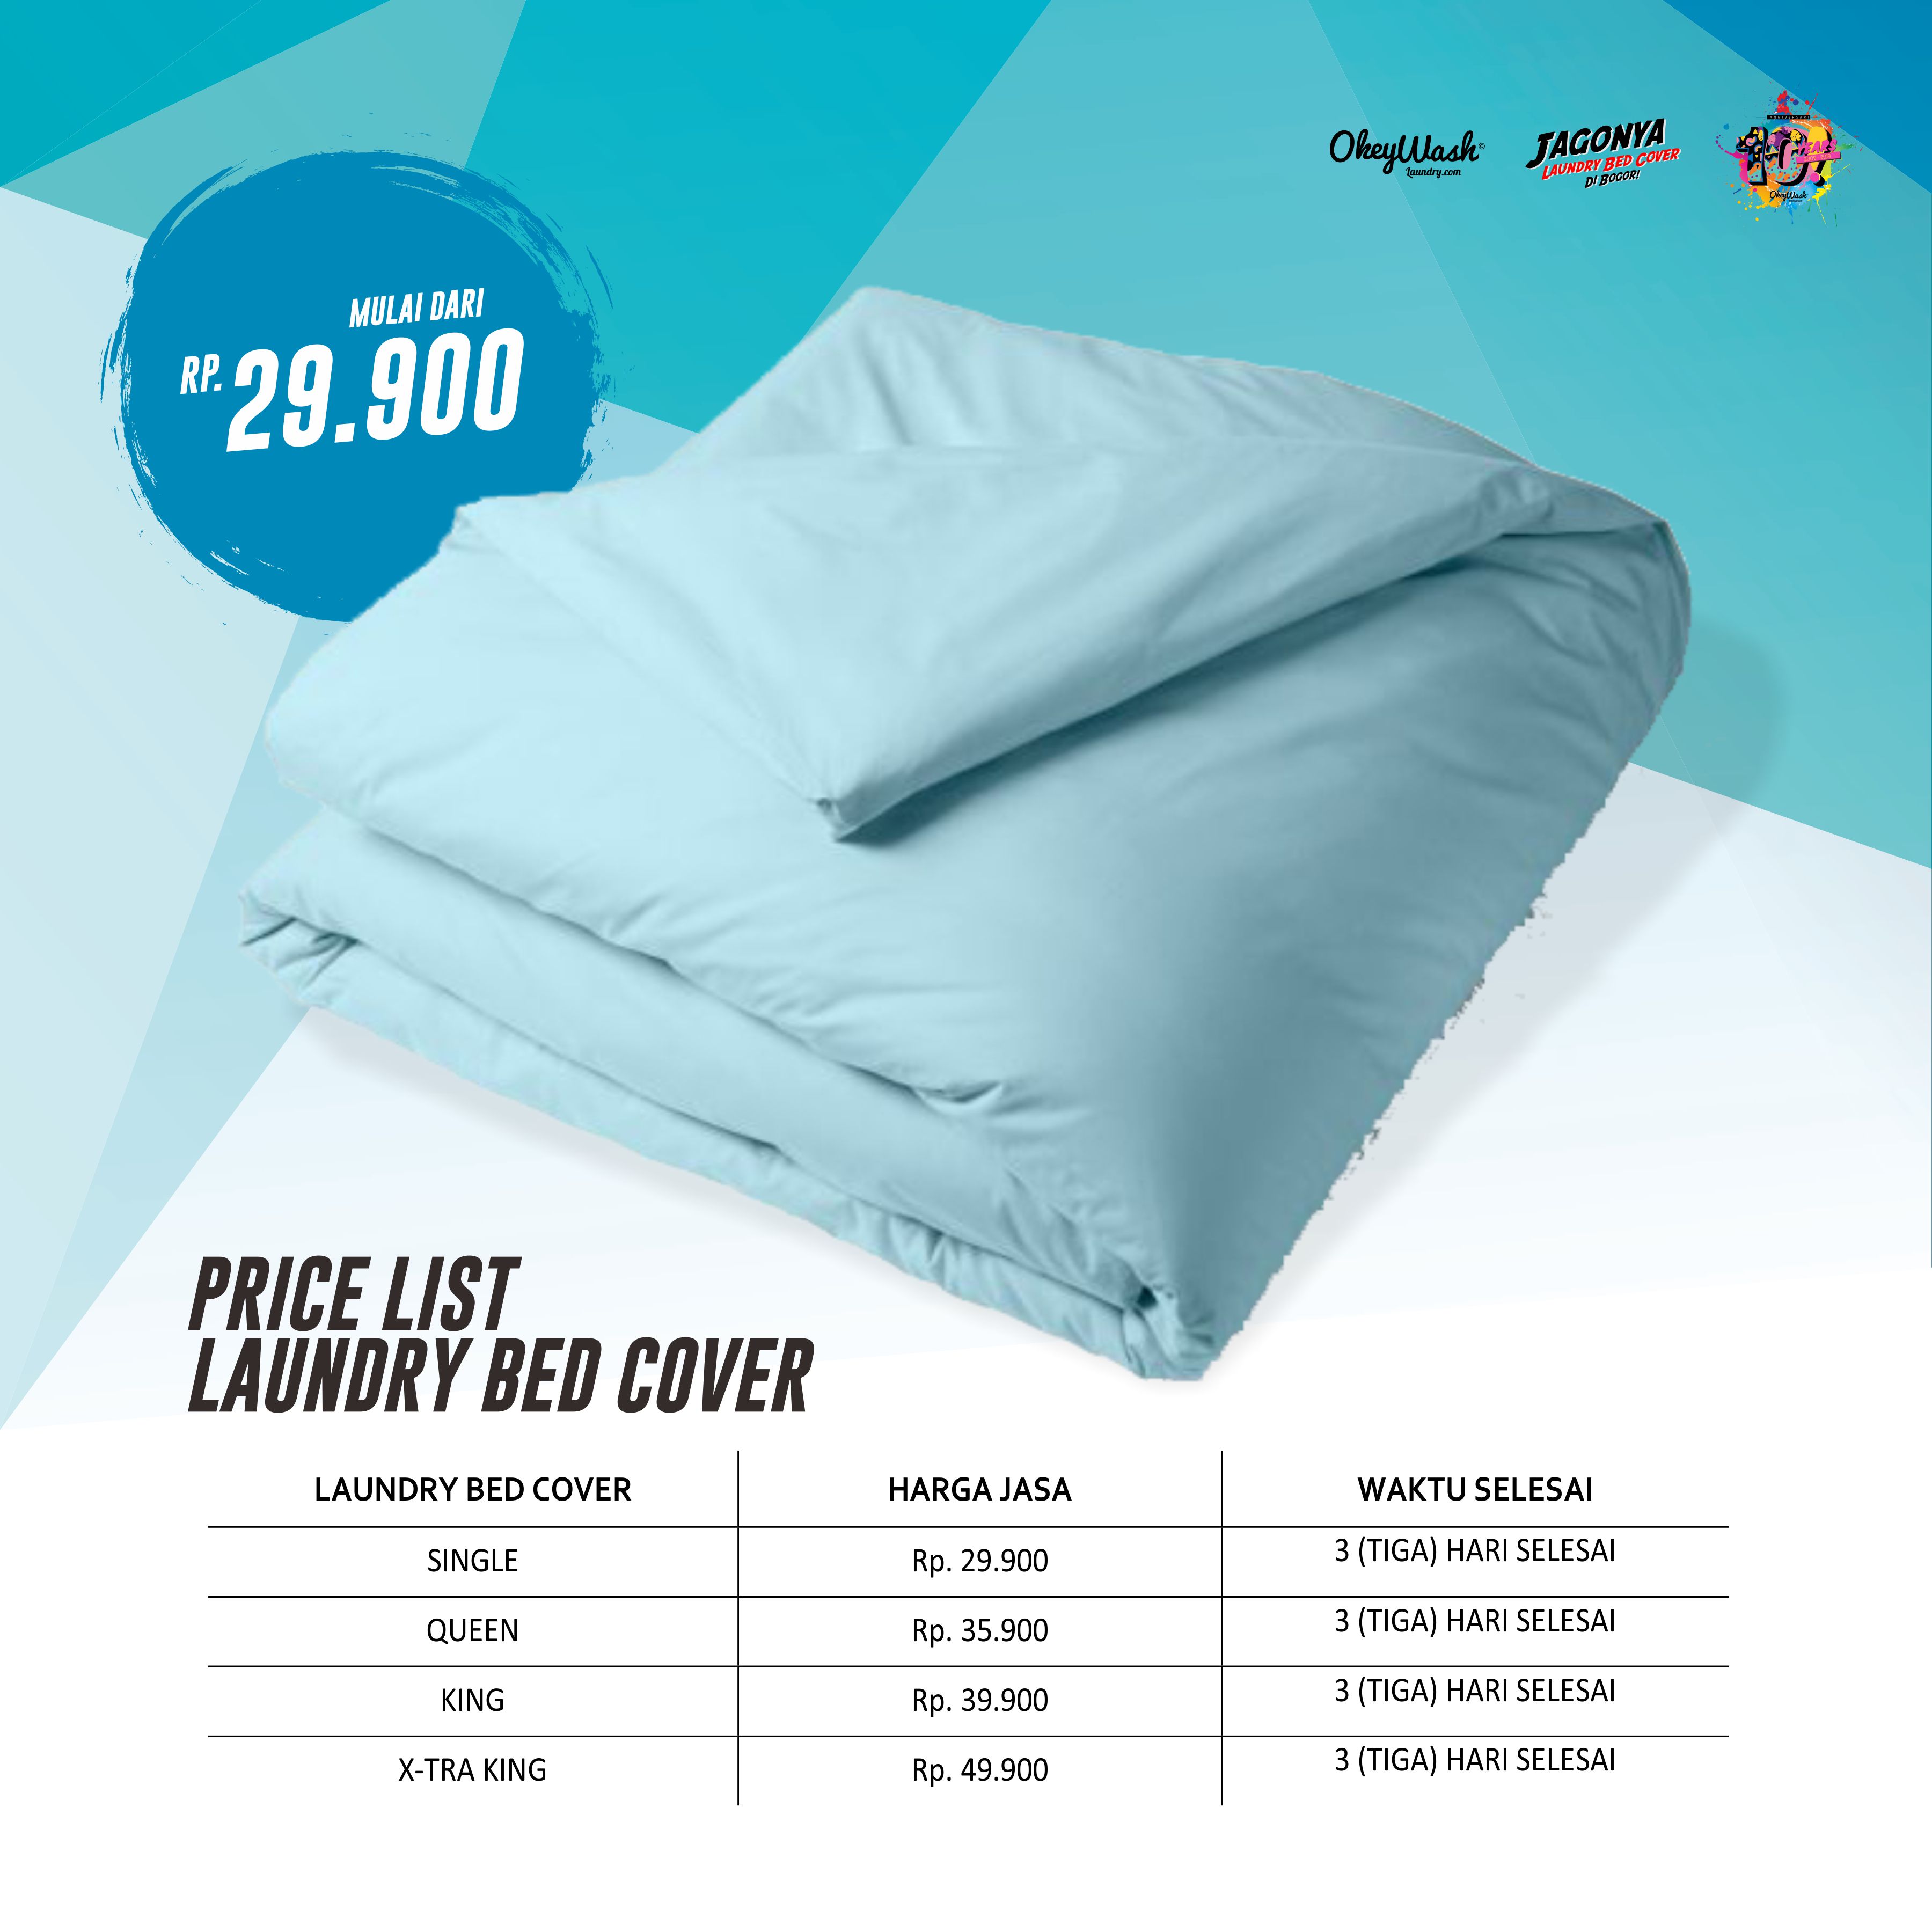 Price List Laundry Bed Cover 2021 - okeywashlaundry.com